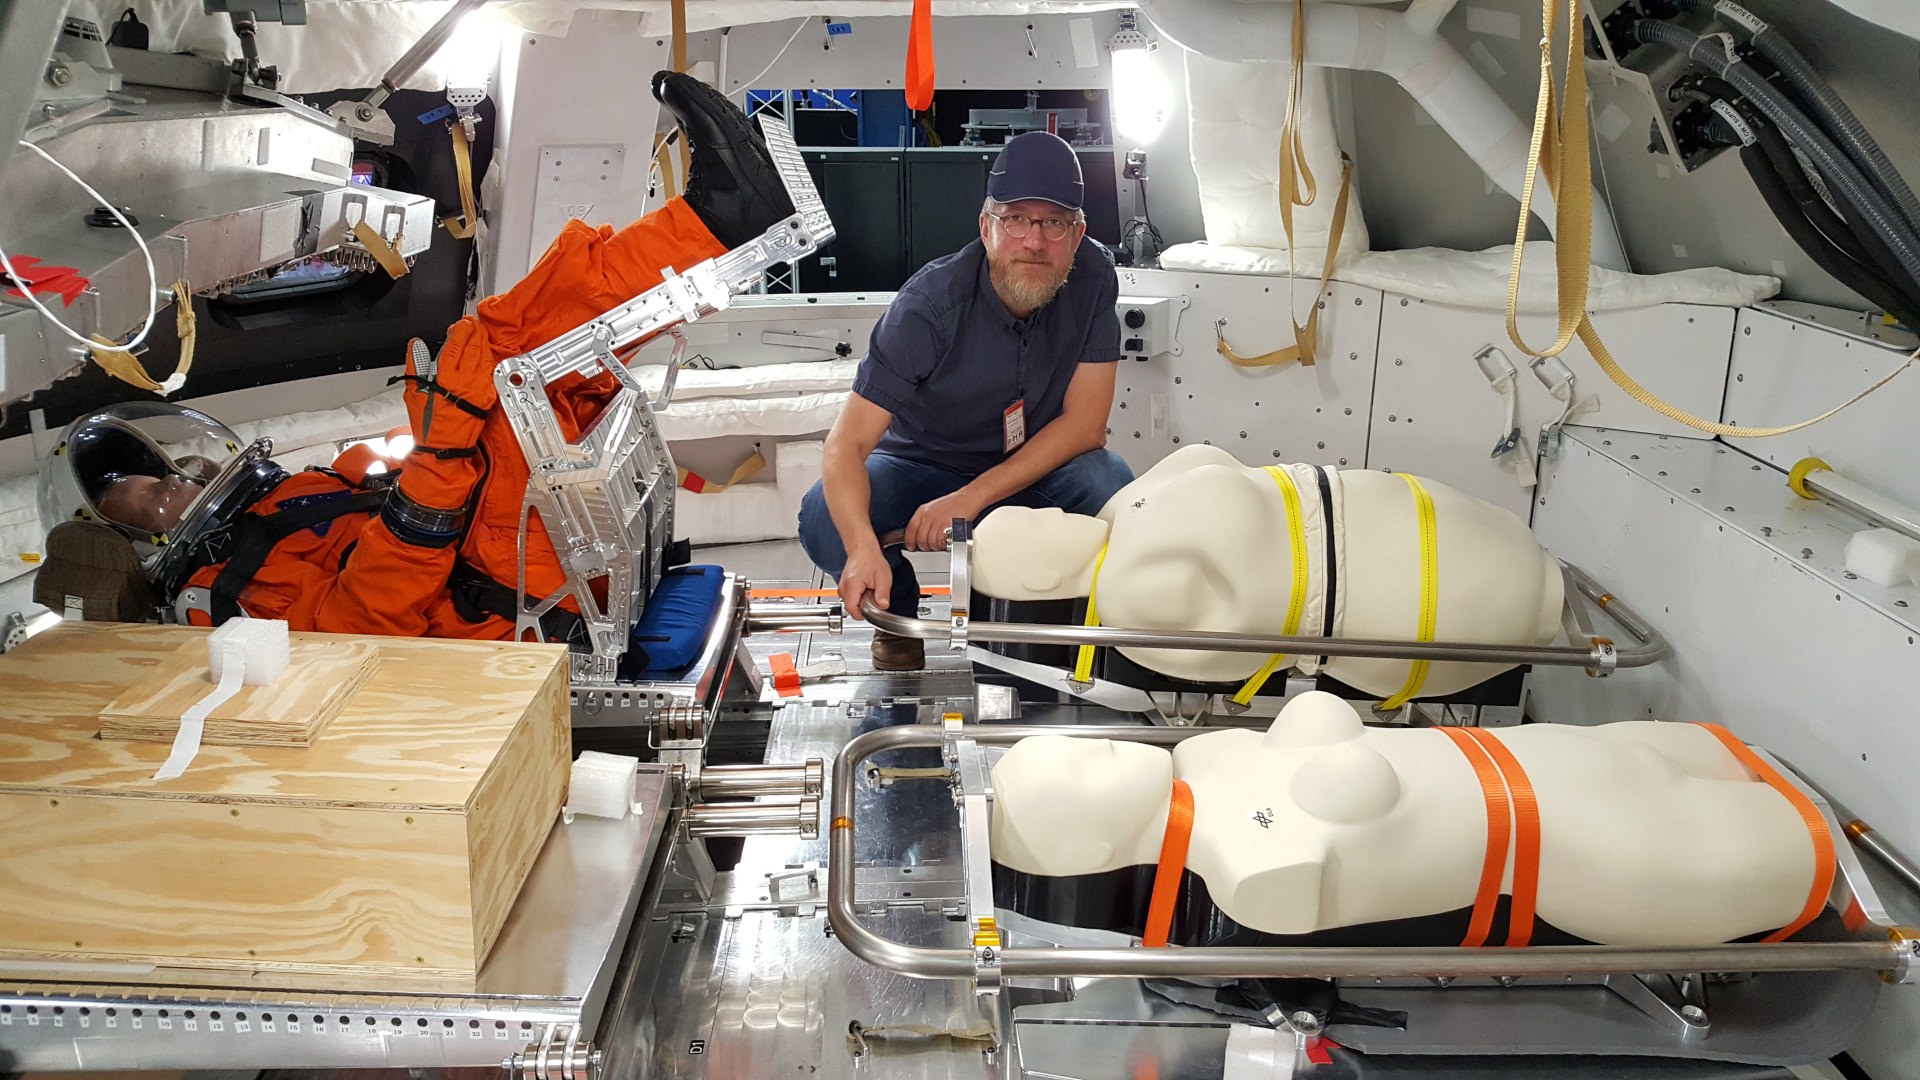 DLR-Strahlenbiologe Dr. Thomas Berger mit den Dummys in der Orion-Kapsel